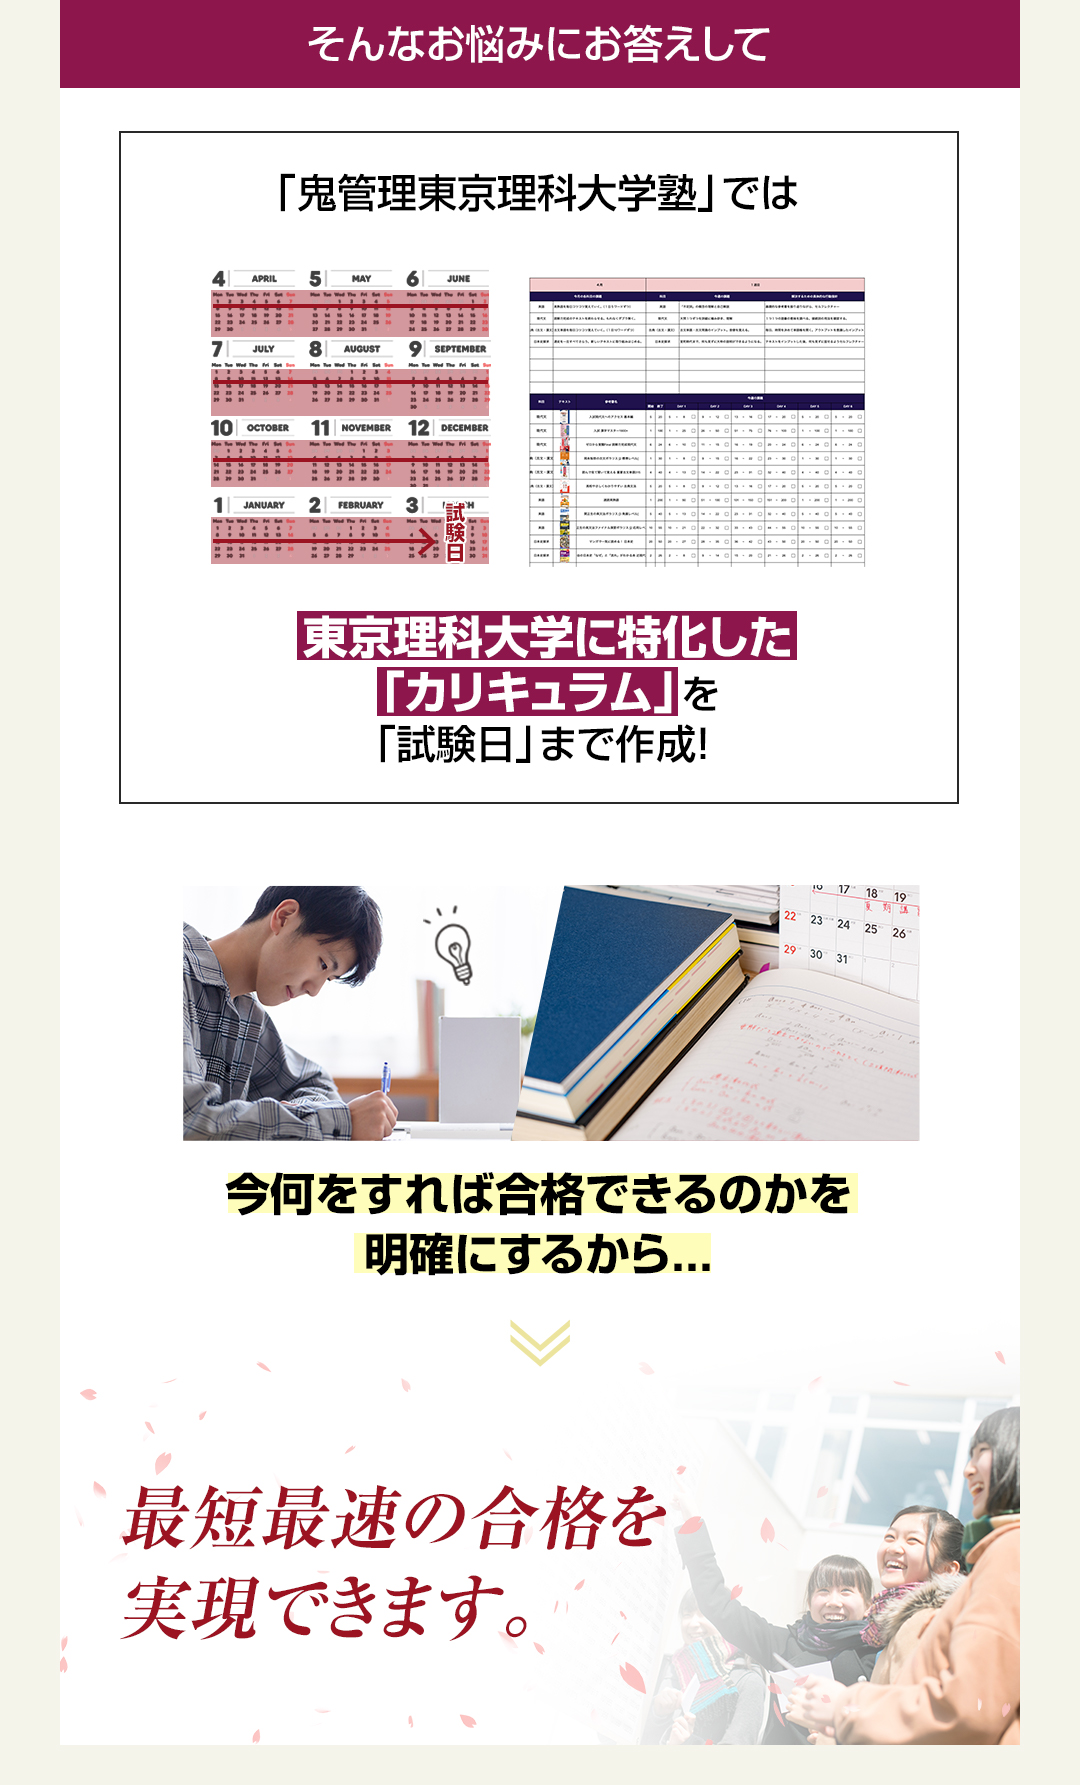 「鬼管理東京理科大学塾」では東京理科大学に特化した「カリキュラム」を「試験日」まで作成